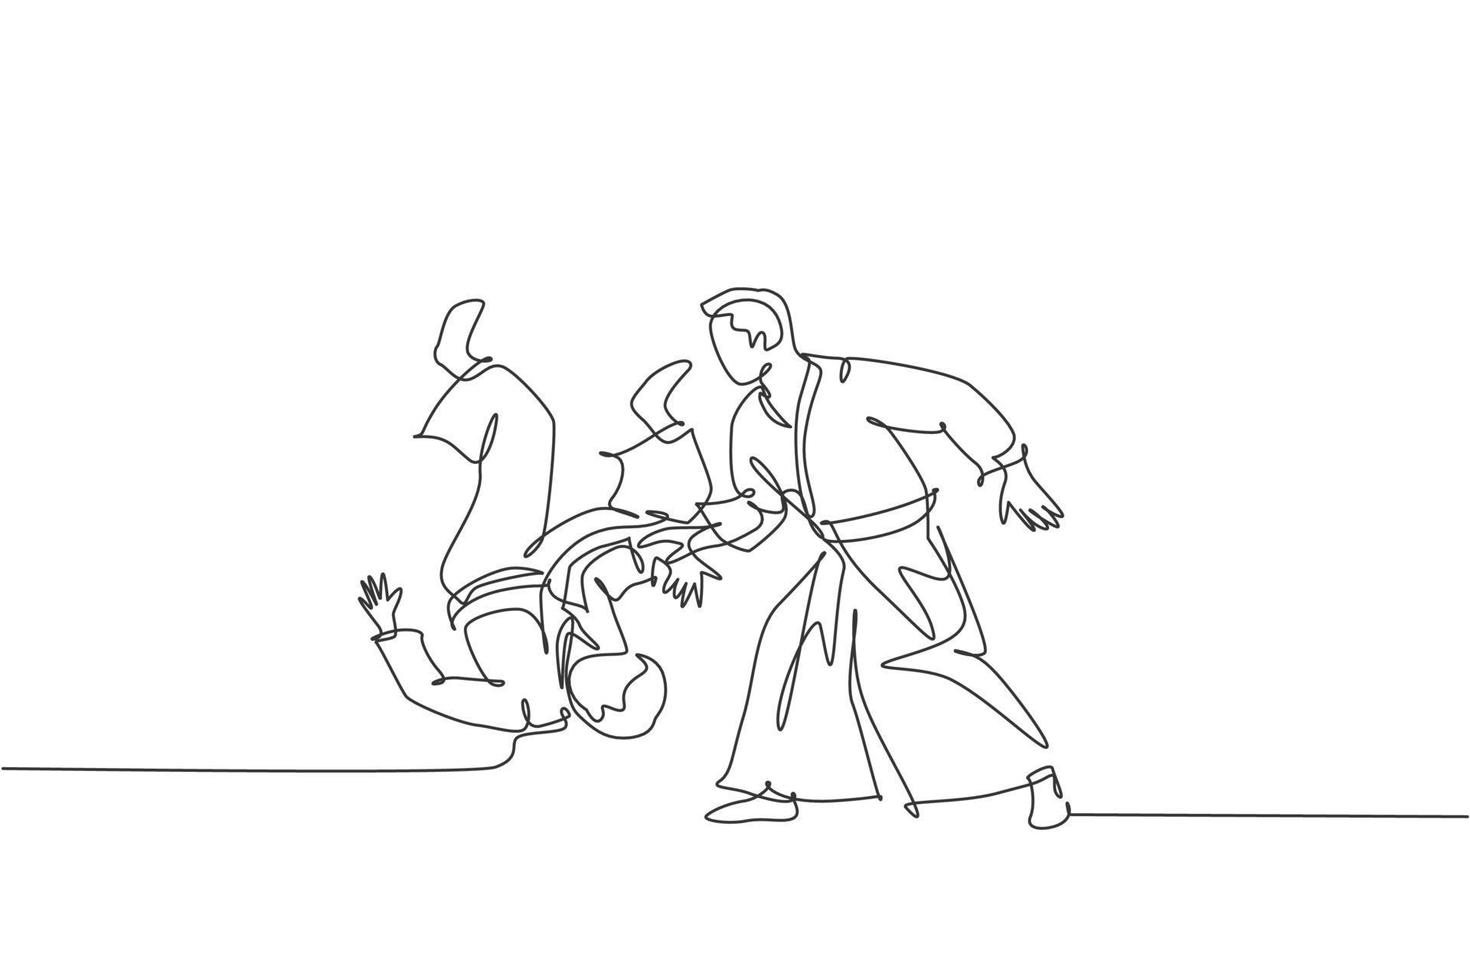 een doorlopende lijntekening van een jonge man aikido-jager oefent vechttechniek in het dojo-trainingscentrum. vechtsport strijdbare sport concept. dynamische enkele lijn tekenen ontwerp vectorillustratie vector